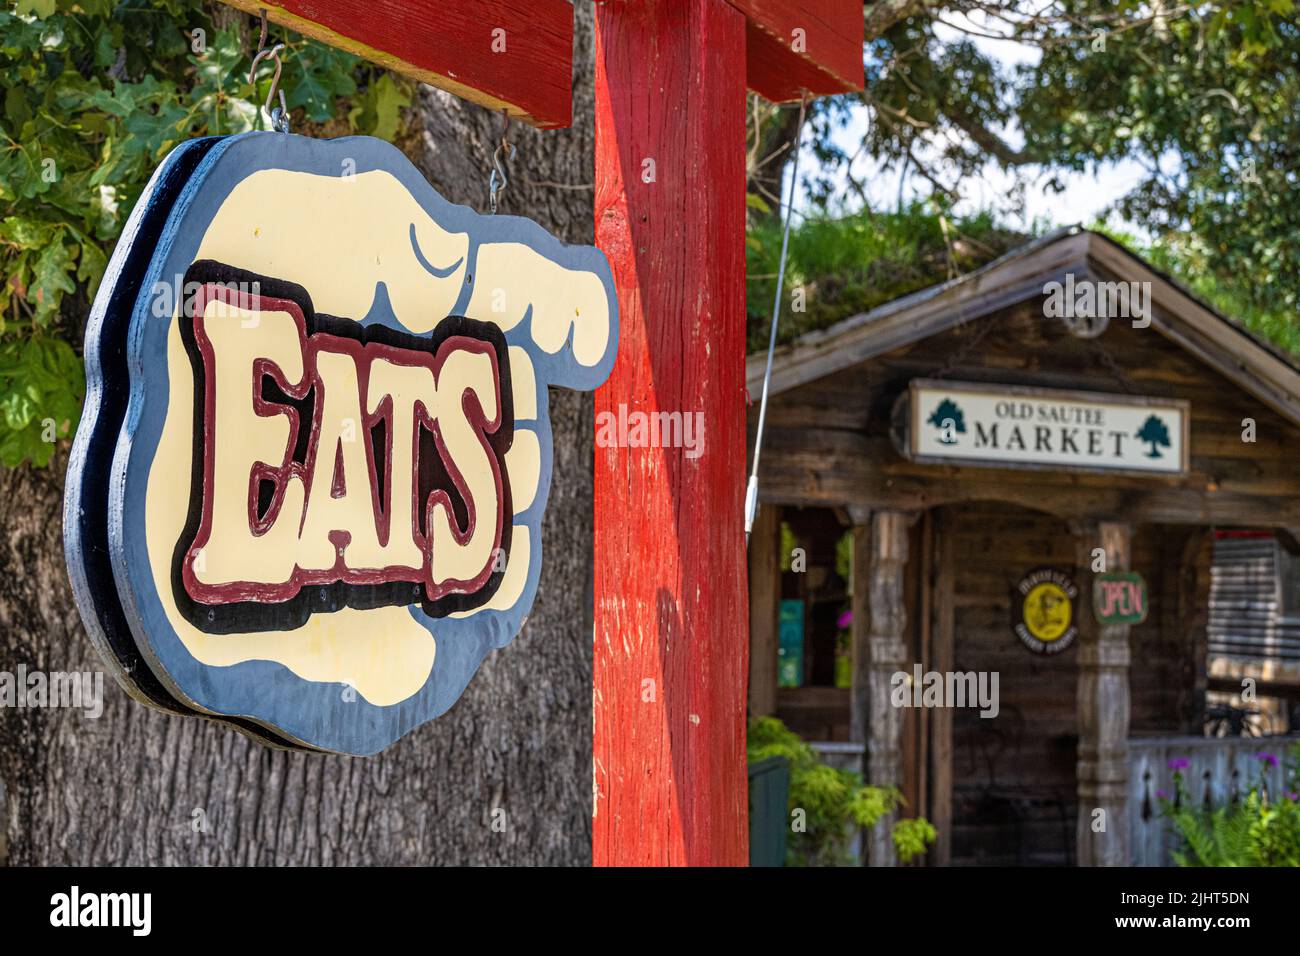 El cartel 'Eats' indica el camino hacia Old Sautee Market, que ofrece productos horneados frescos y sándwiches hechos a mano para los lugareños y visitantes de Helen, Georgia. Foto de stock